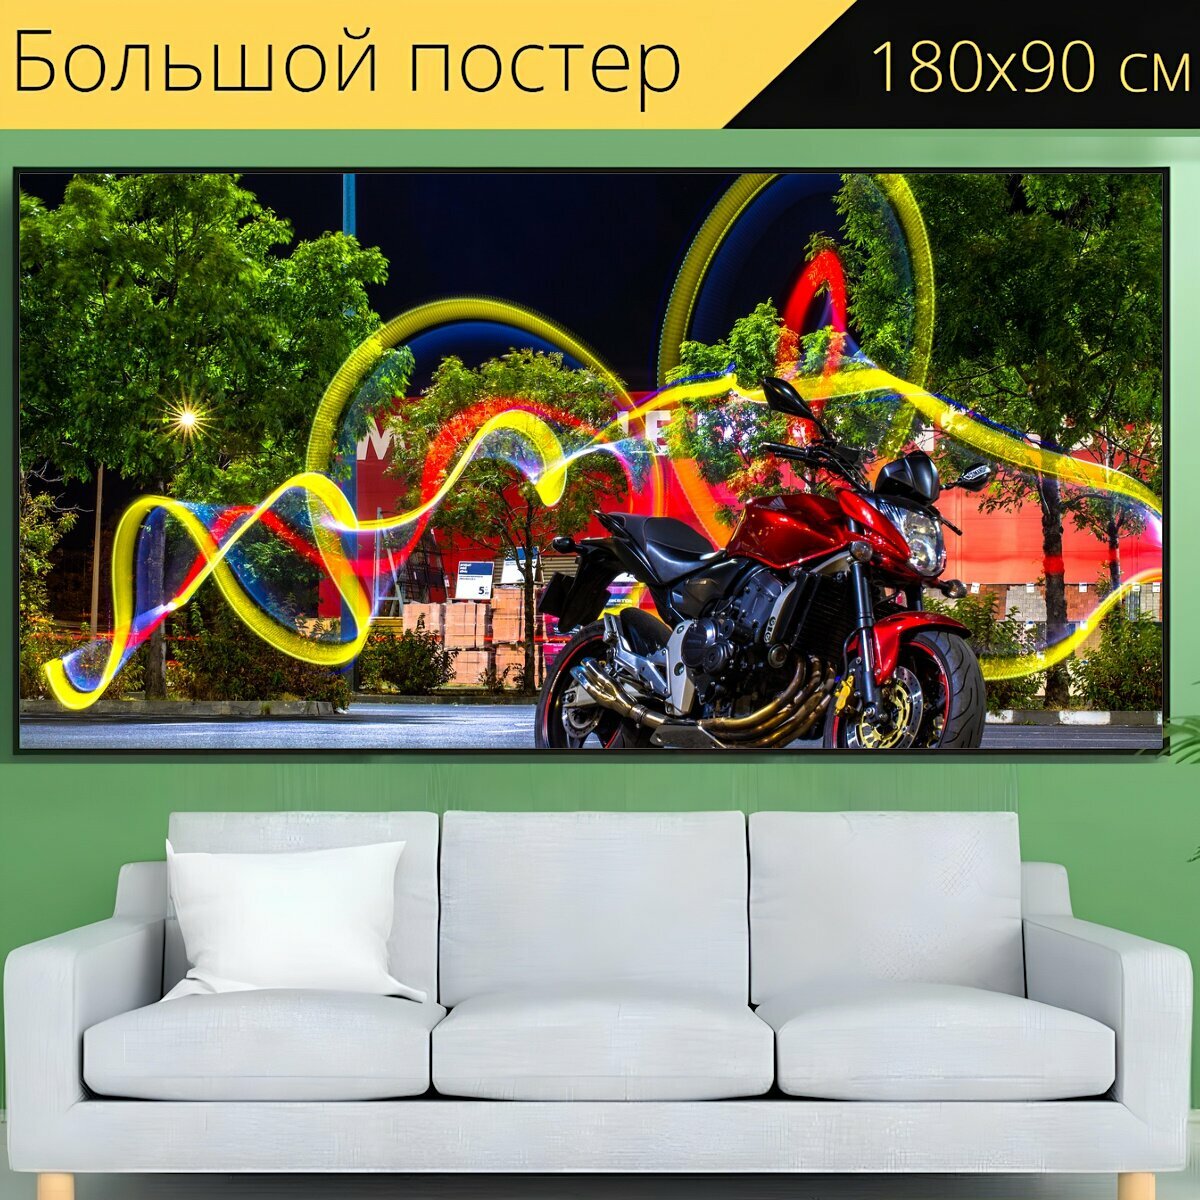 Большой постер "Велосипед, мотоцикл, мотор" 180 x 90 см. для интерьера